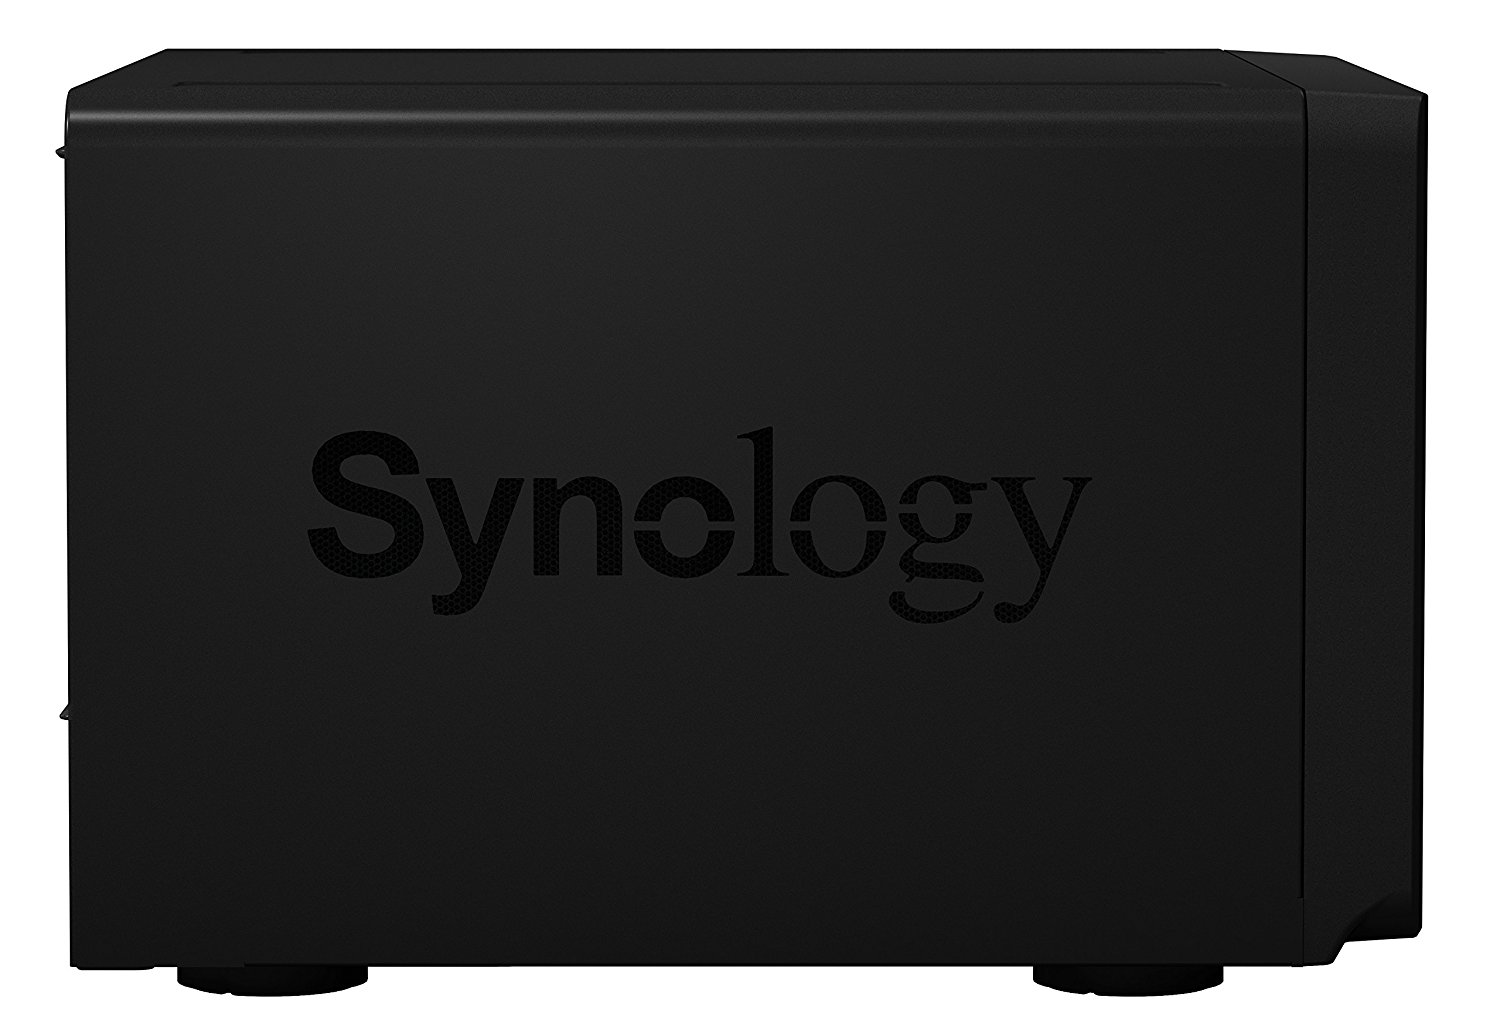 Synology DS1515+ 5 Bay Desktop NAS Enclosure